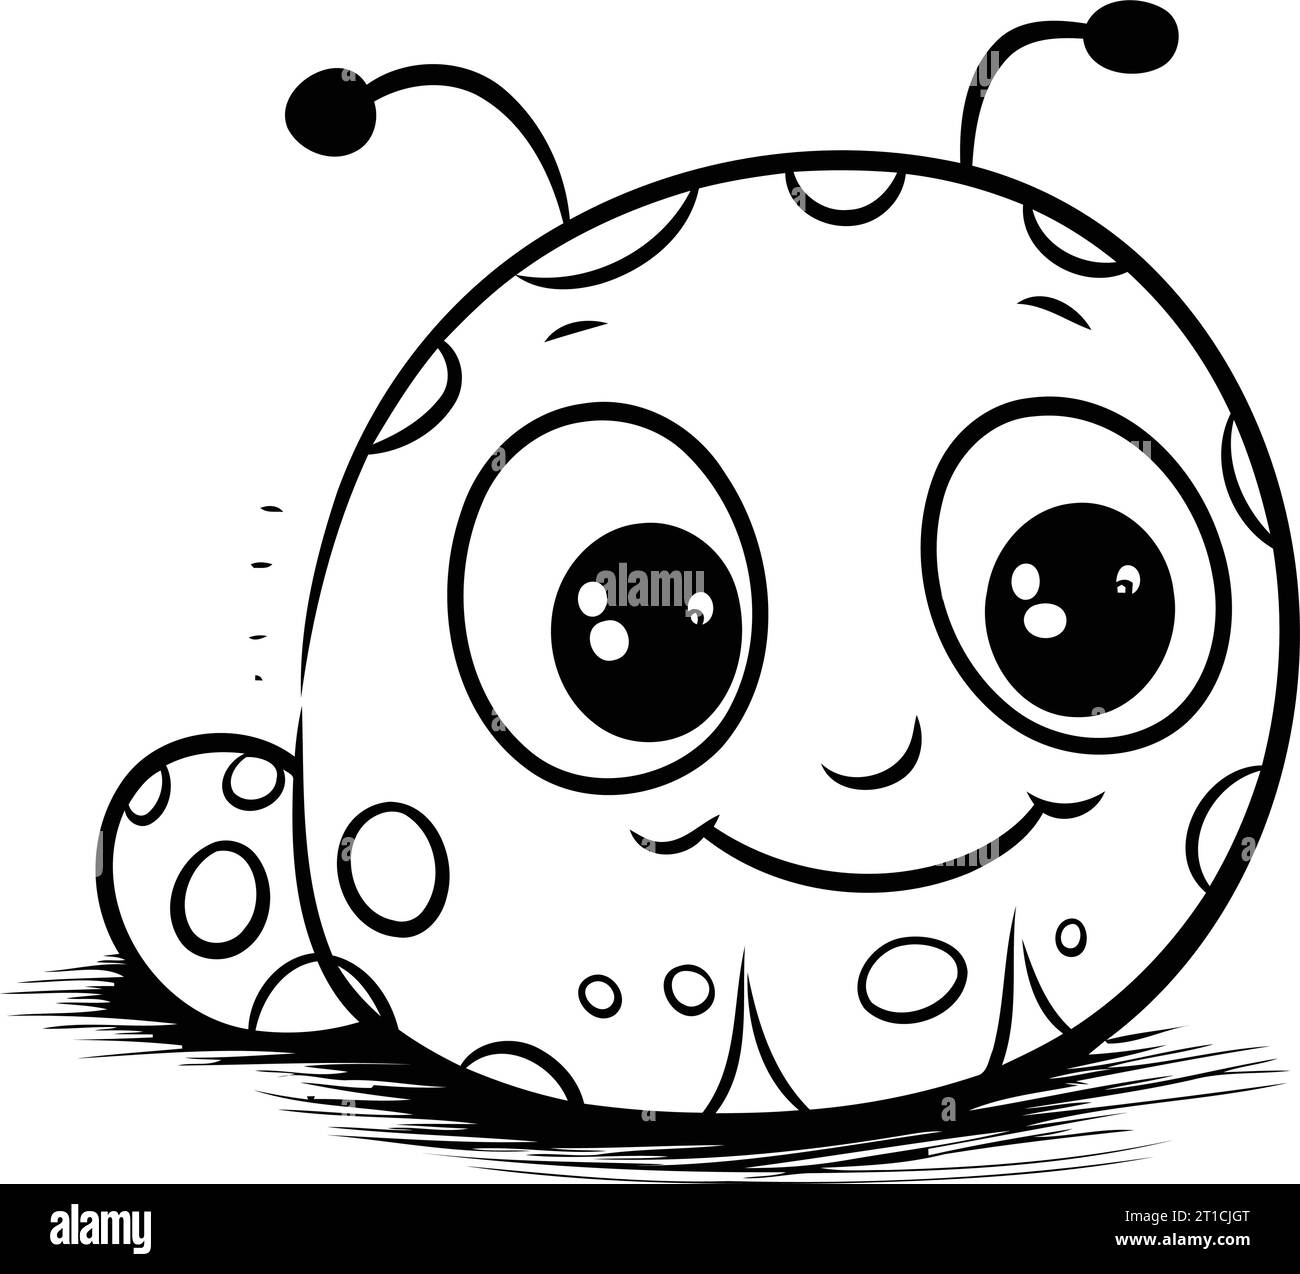 Schwarz-weiß-Zeichentrick-Illustration des niedlichen Alien-Charakters für Malbuch Stock Vektor